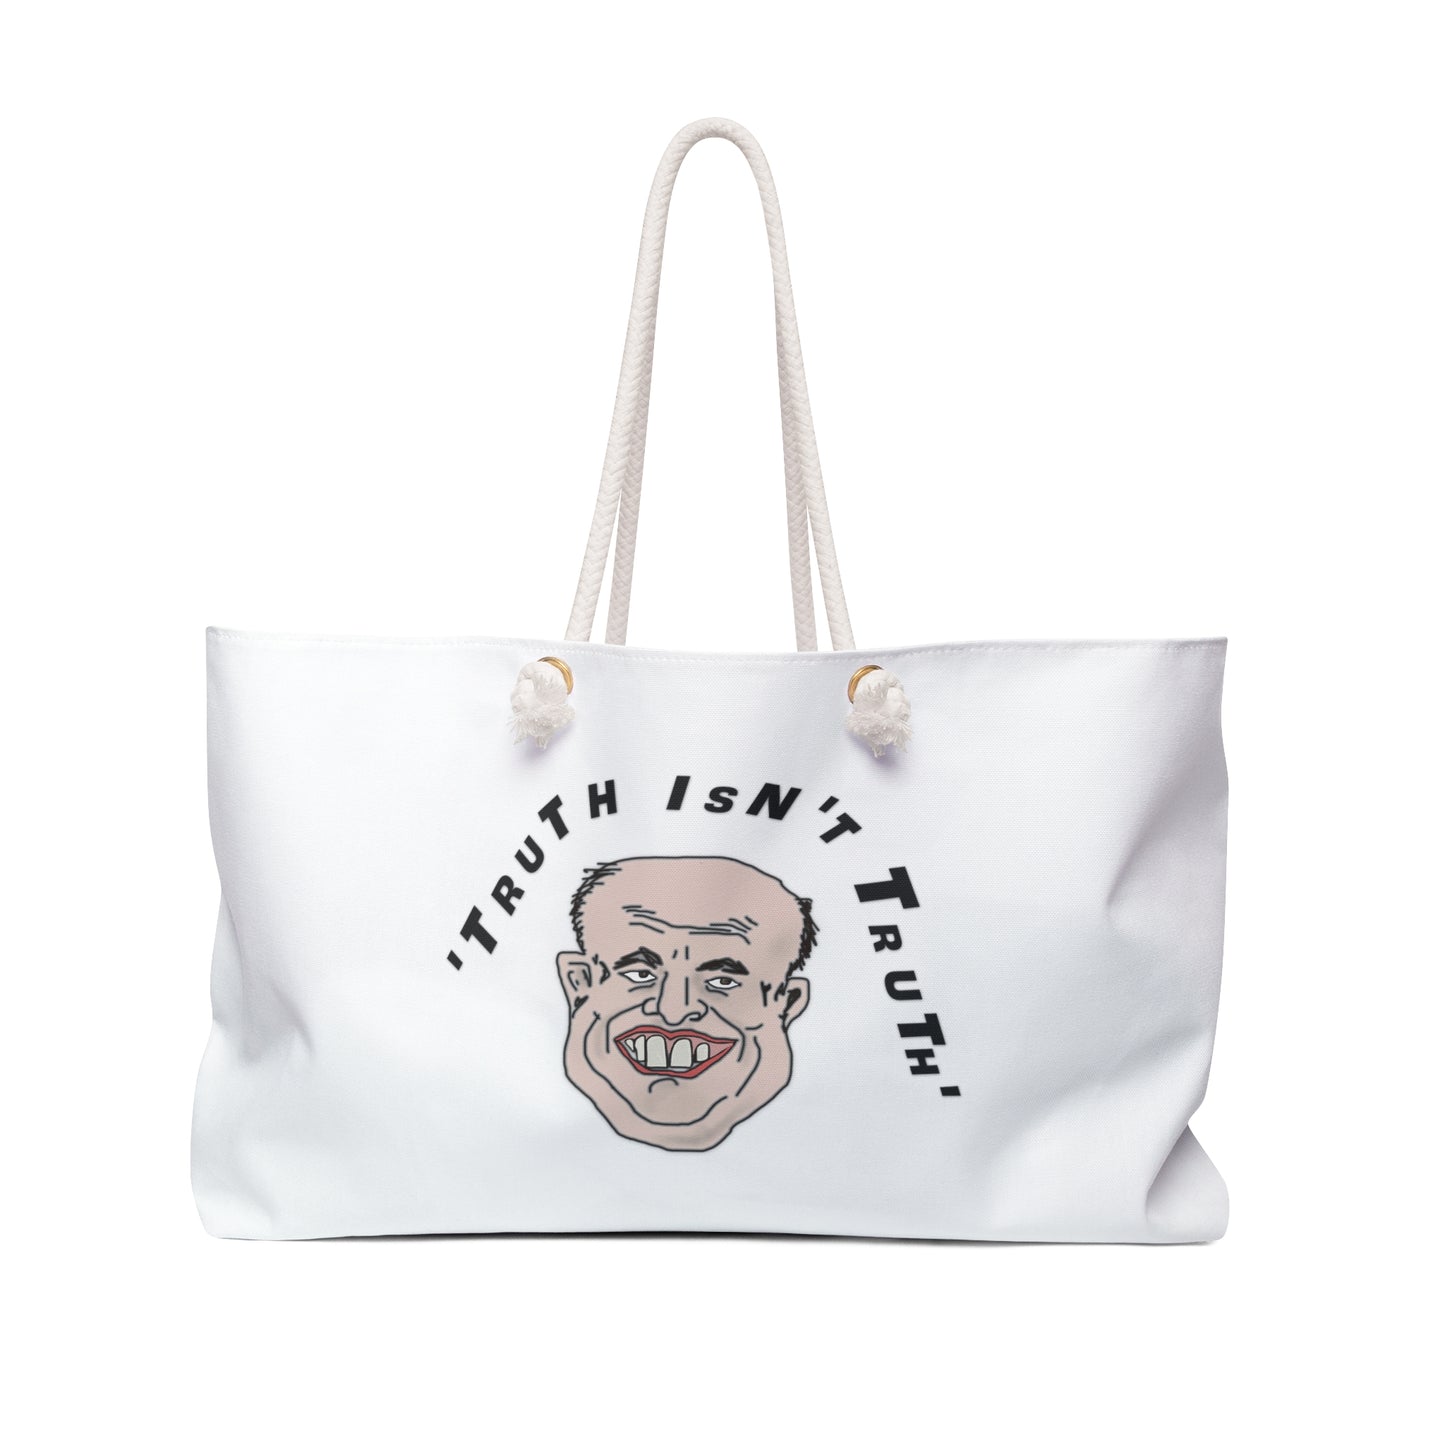 Rudy's Truth Weekender Bag